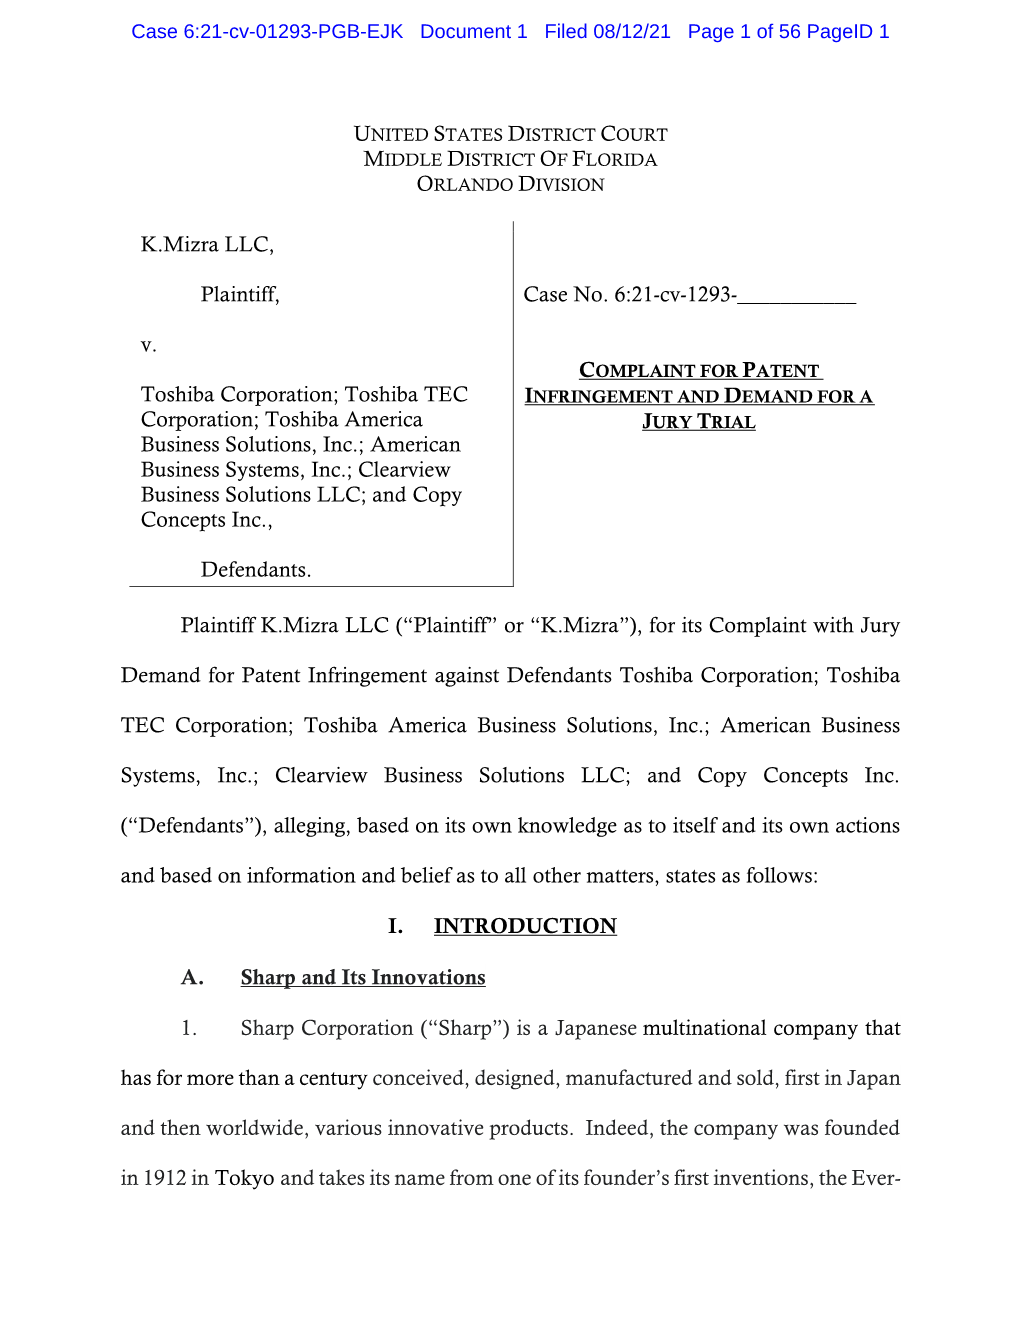 K.Mizra LLC, Plaintiff, V. Toshiba Corporation